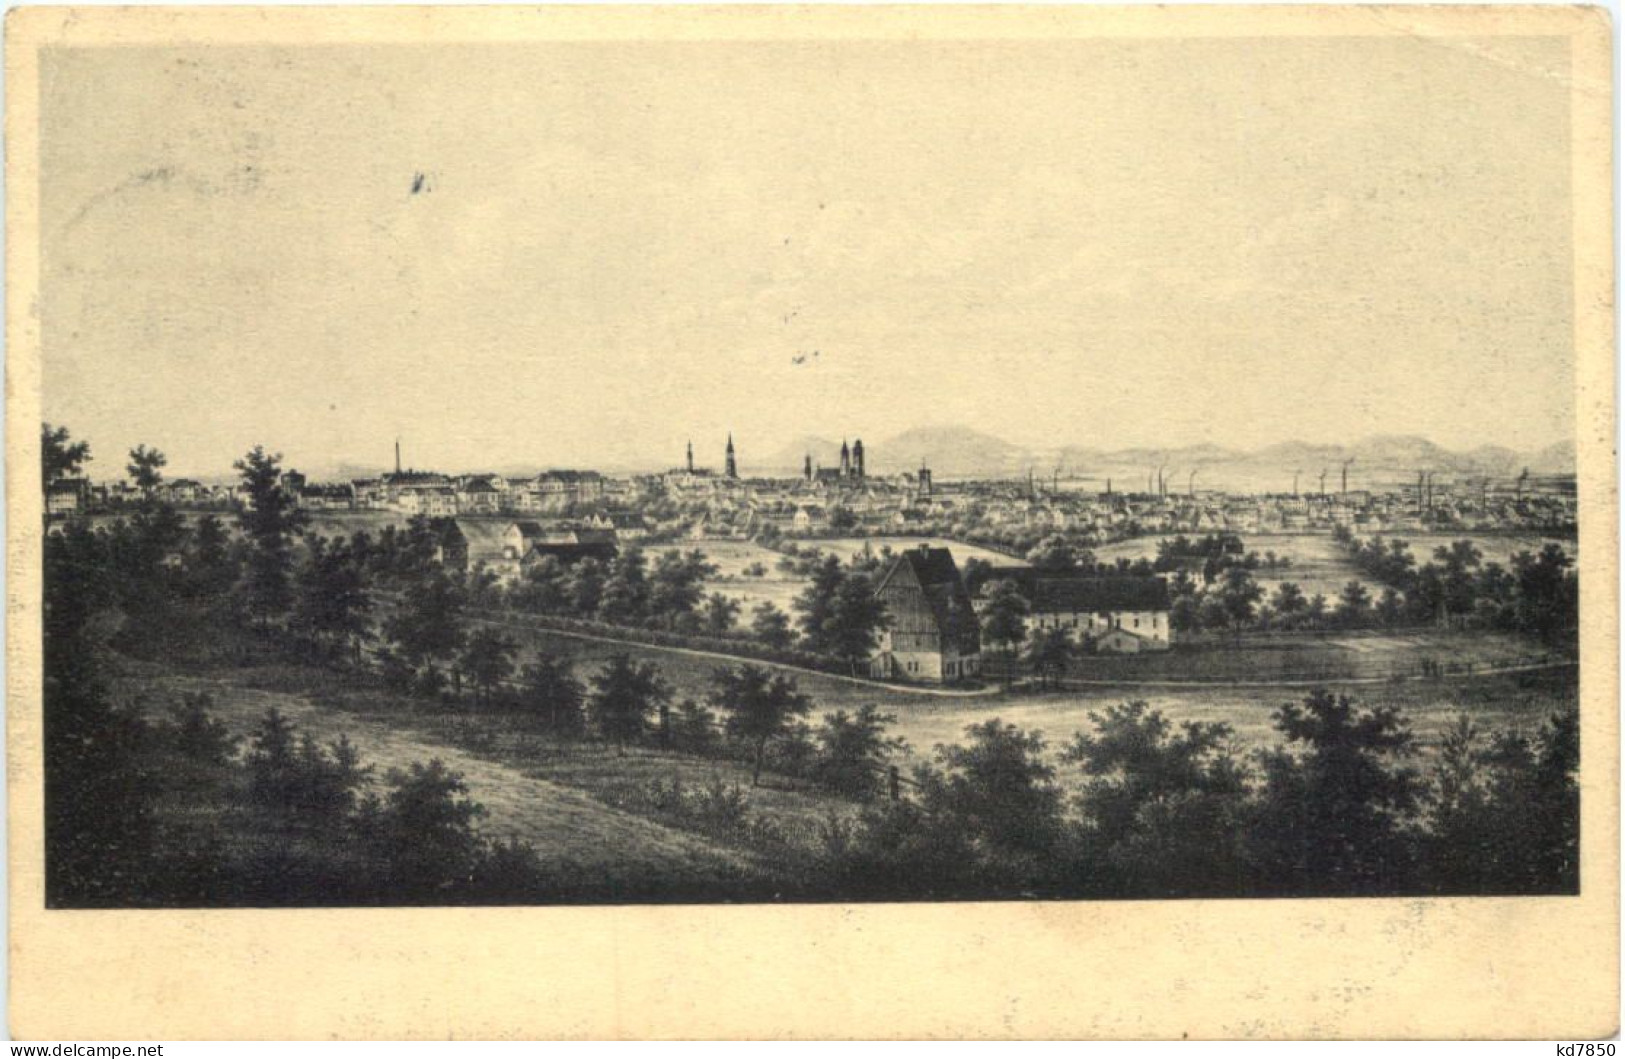 Zittau In Sachsen Im Jahre 1860 - Zittau